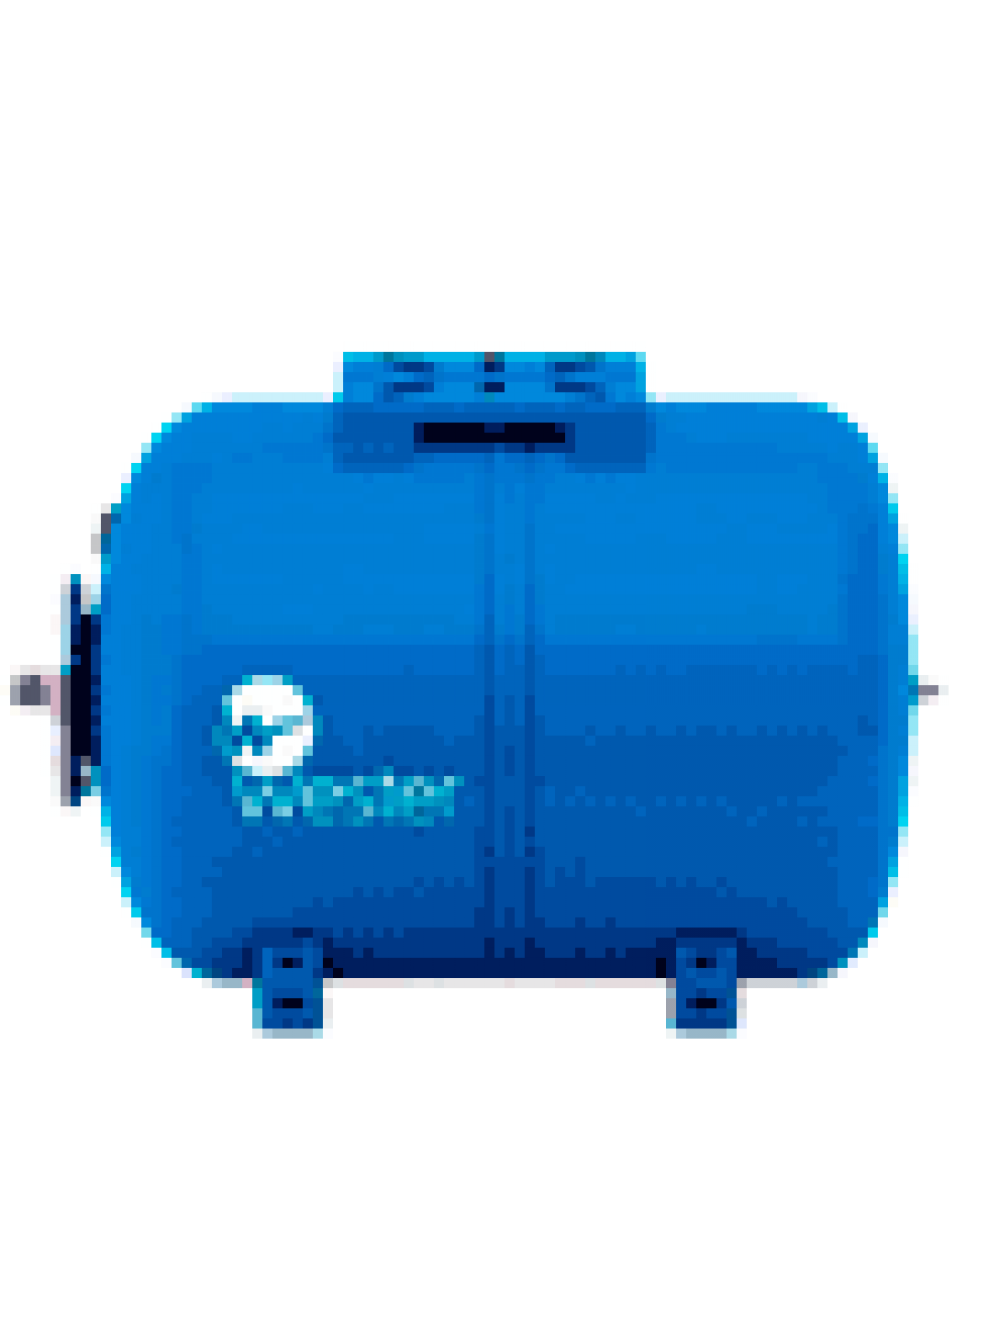 Гидроаккумулятор для систем водоснабжения: устройство и принцип работы